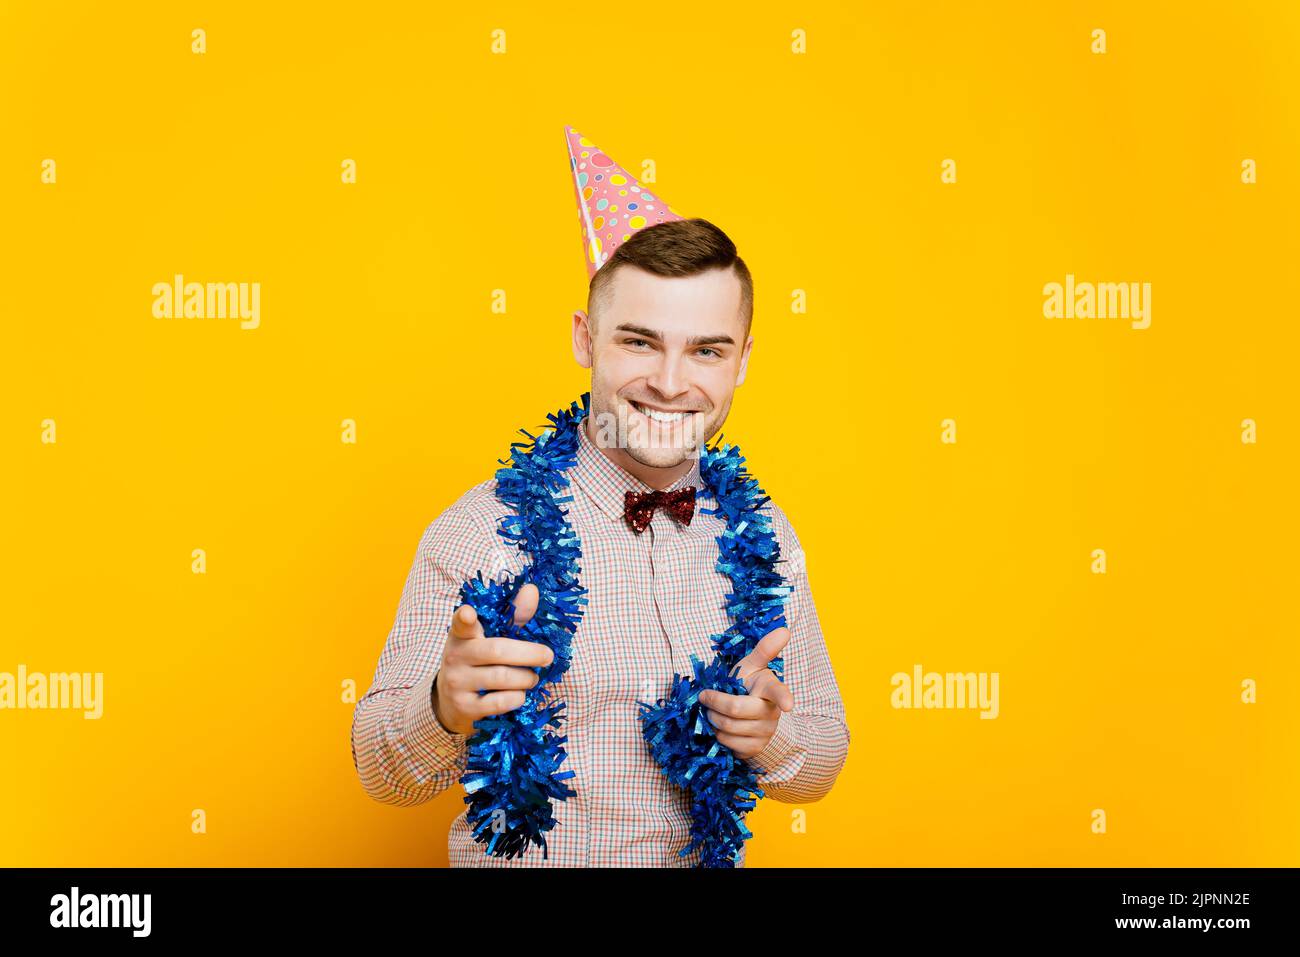 Ragazzo giovane adulto 20-25s con un cappello da festa e tinsel di nuovo anno facendo un gesto che punta con le dita indice in avanti e sorridendo guardando la macchina fotografica Foto Stock